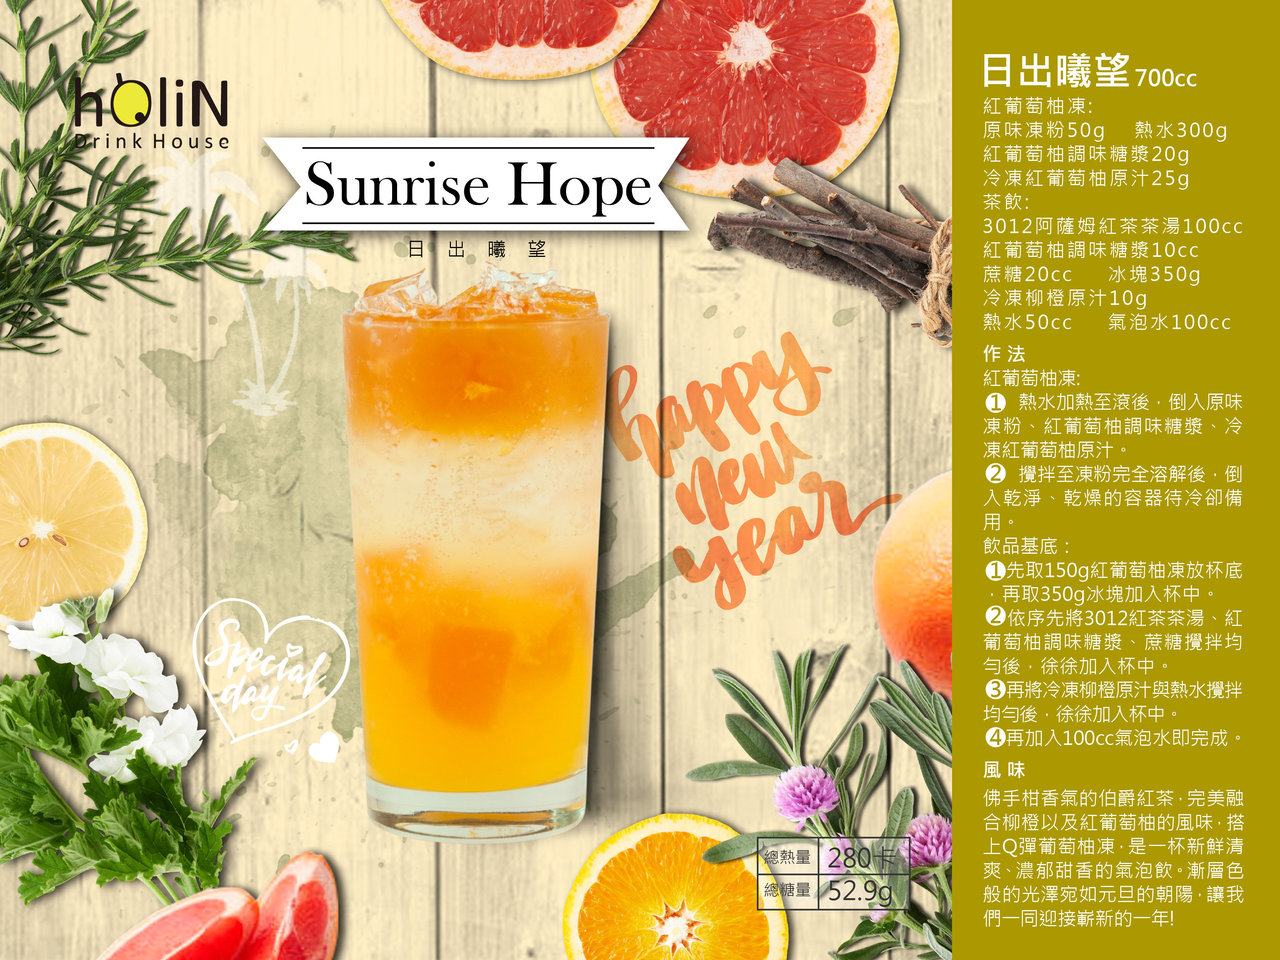 Sunrise Hope - Assam tea,jelly powder,grapefruit juice,syrup,bubbletea,boba,tapiocapearls,milktea